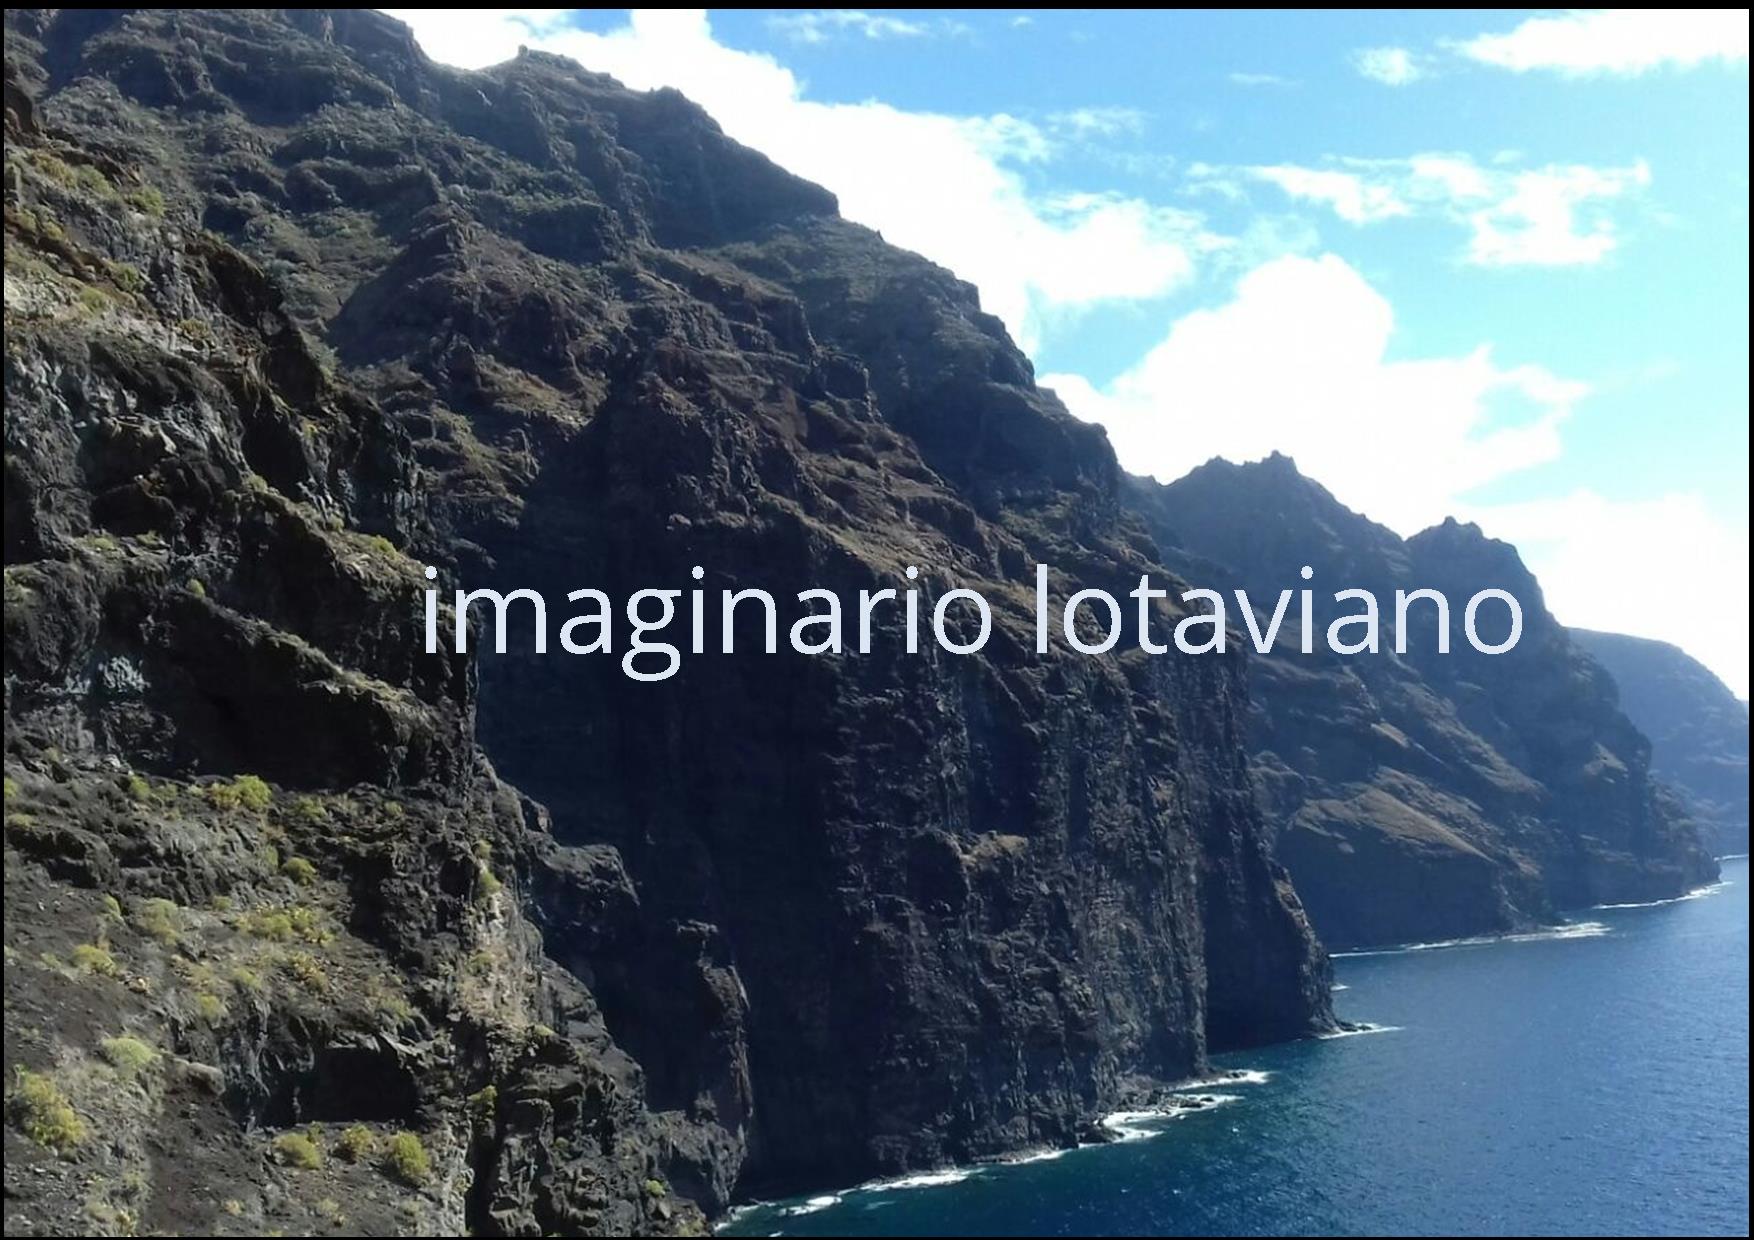 ‘Imaginario lotaviano’, un proyecto de Damián H. Estévez